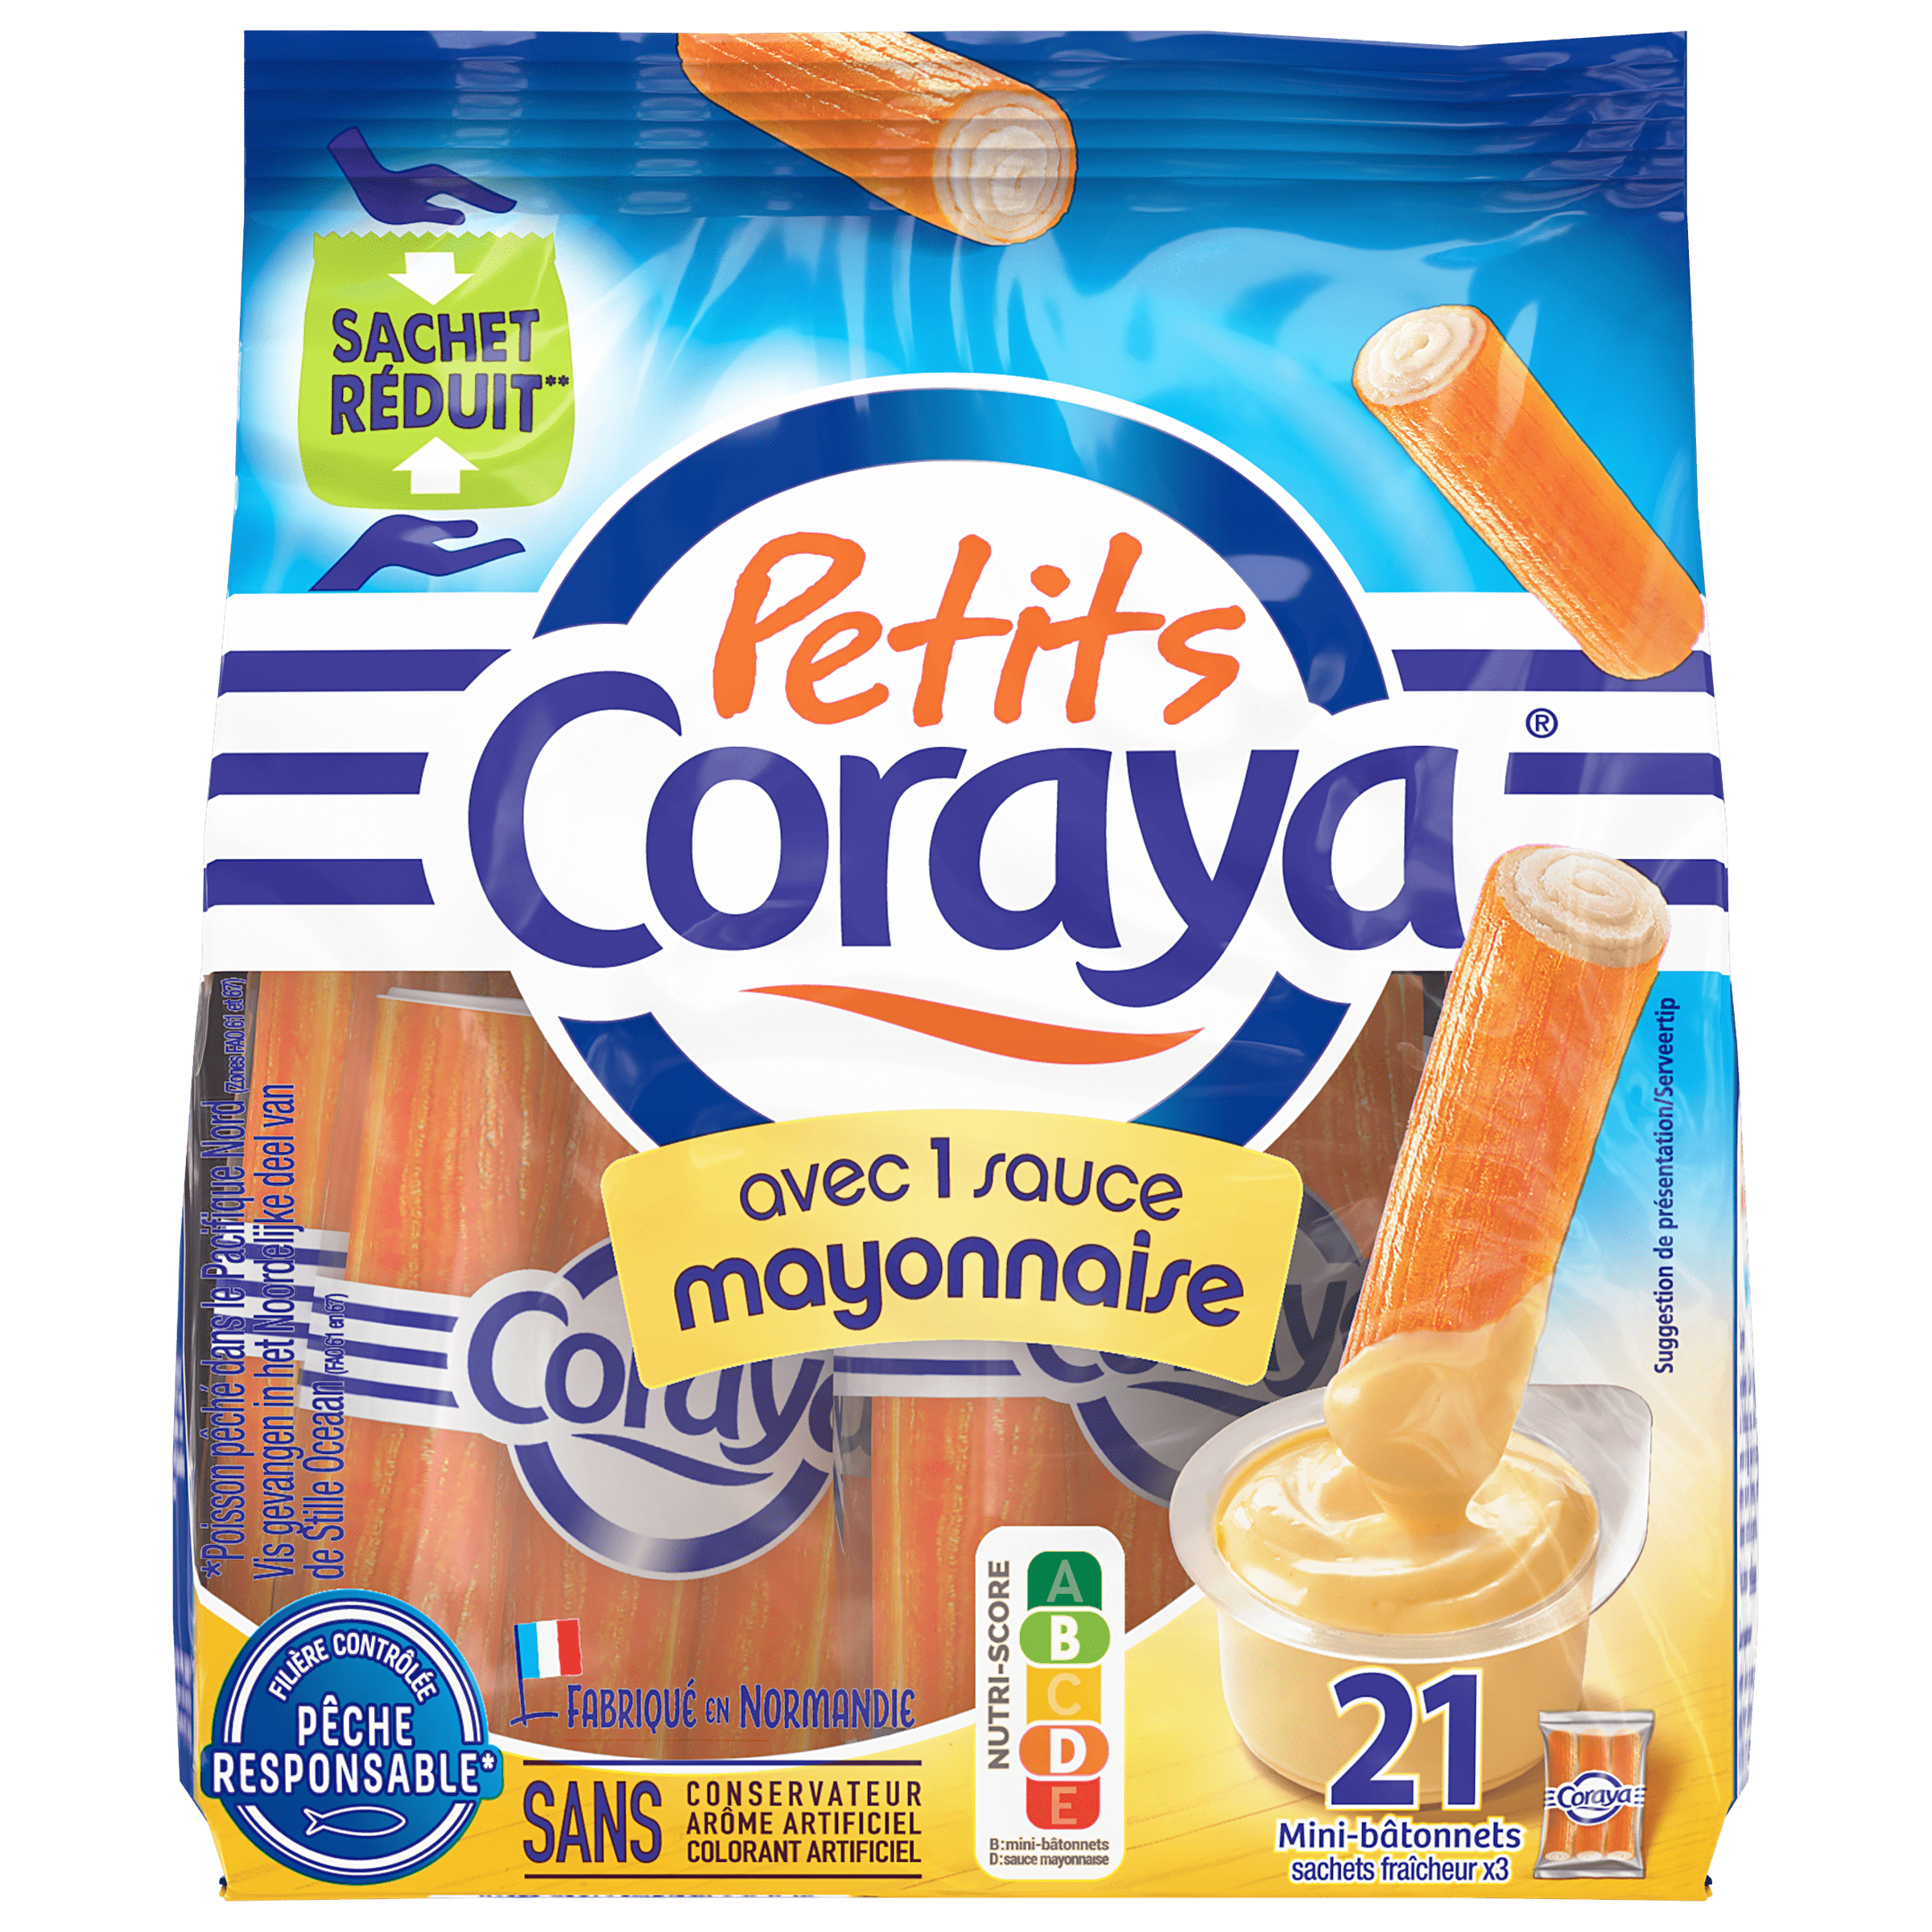 Petits Coraya sauce Mayonnaise